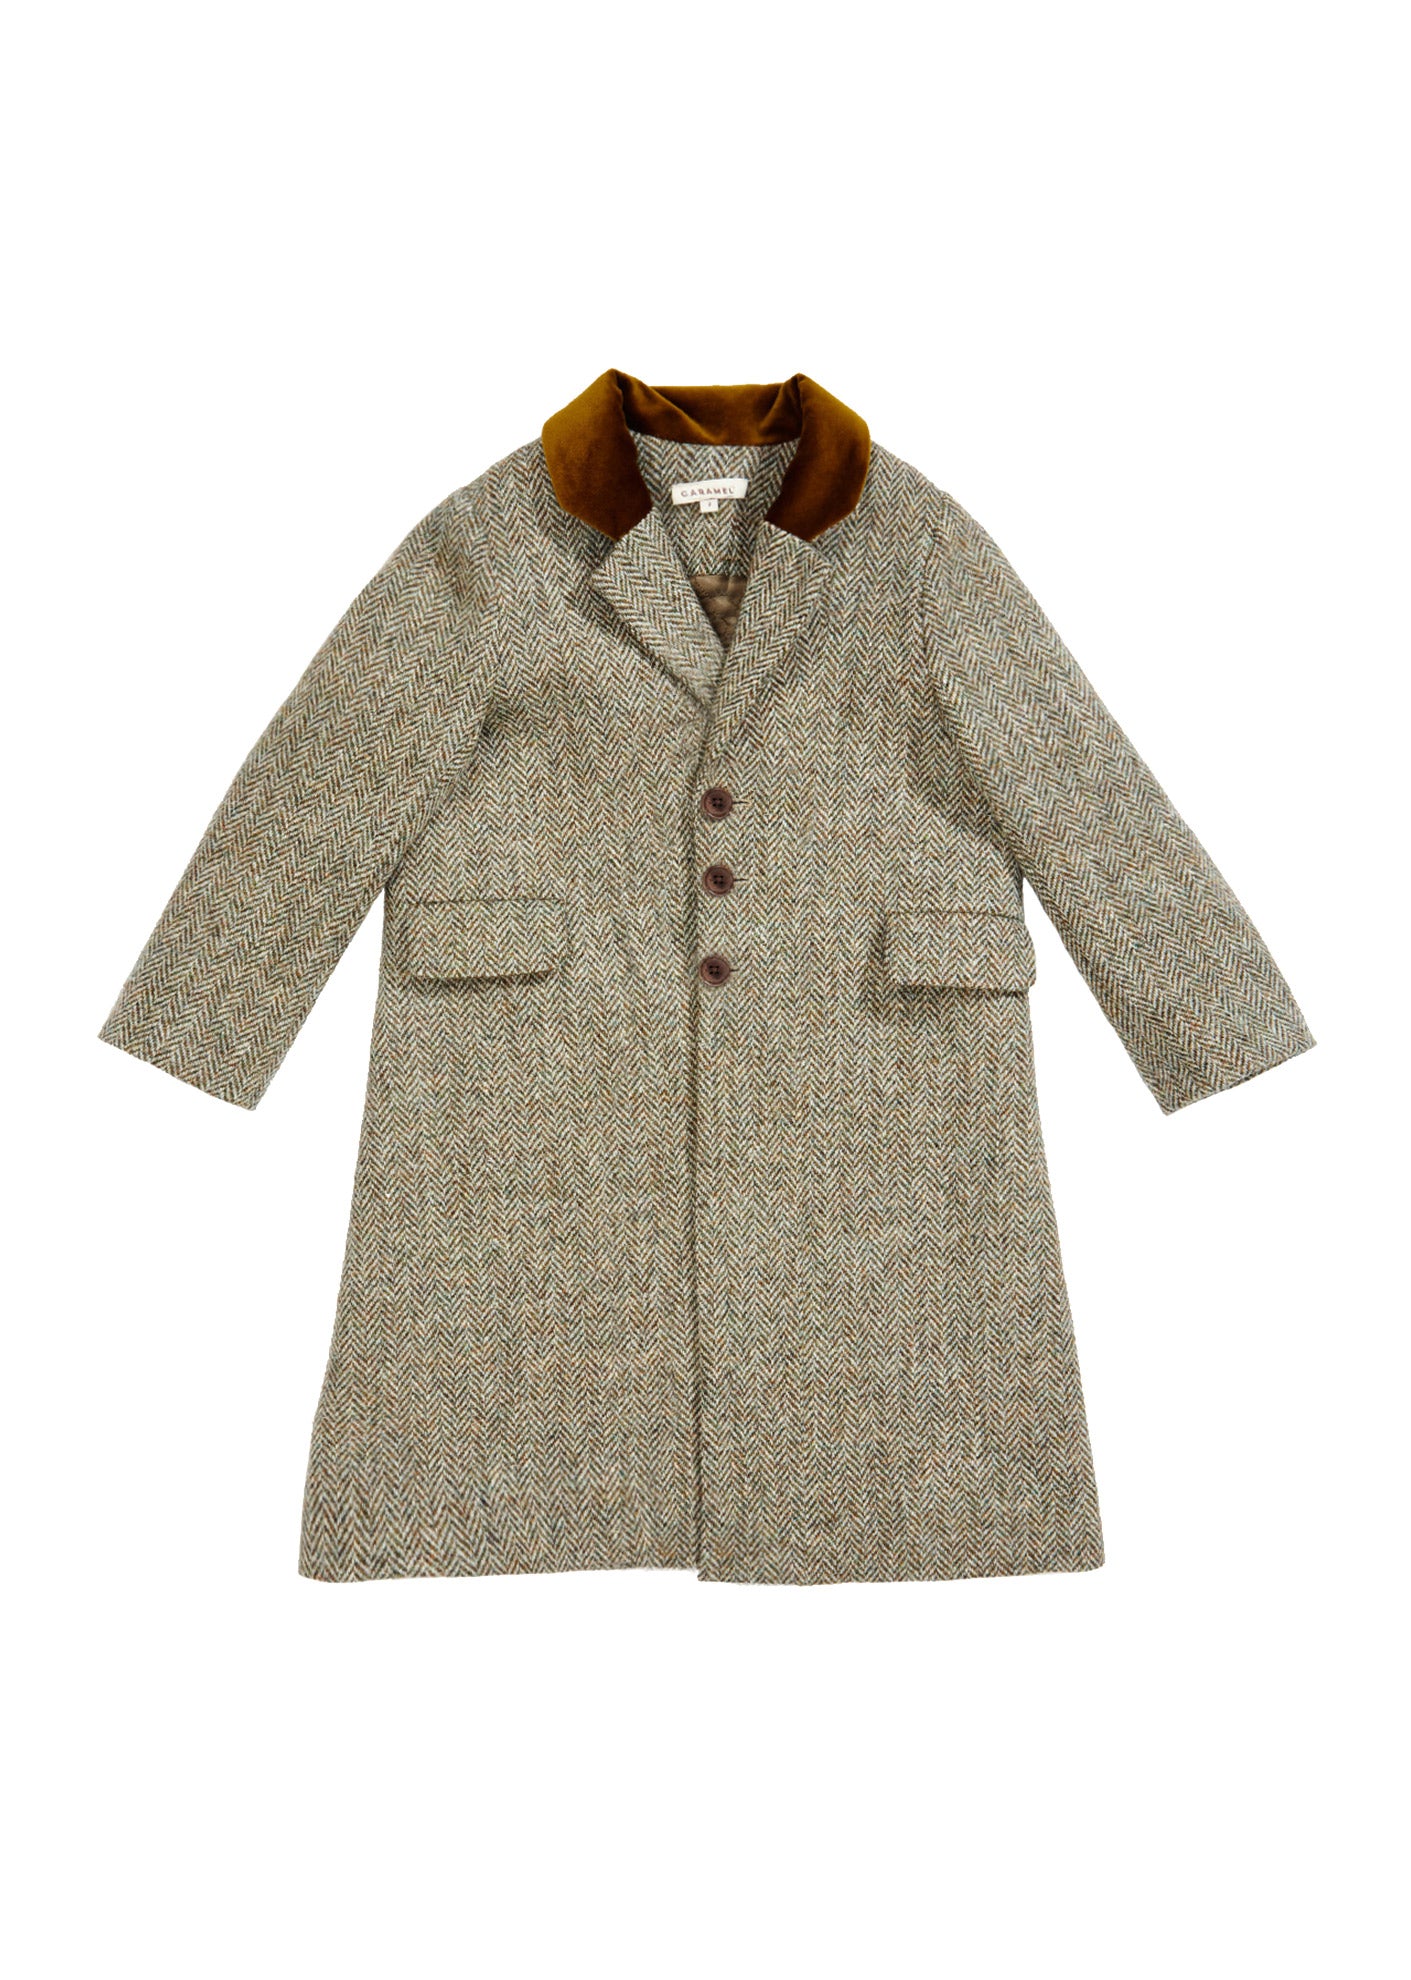 Boys & Girls Beige Wool Coat